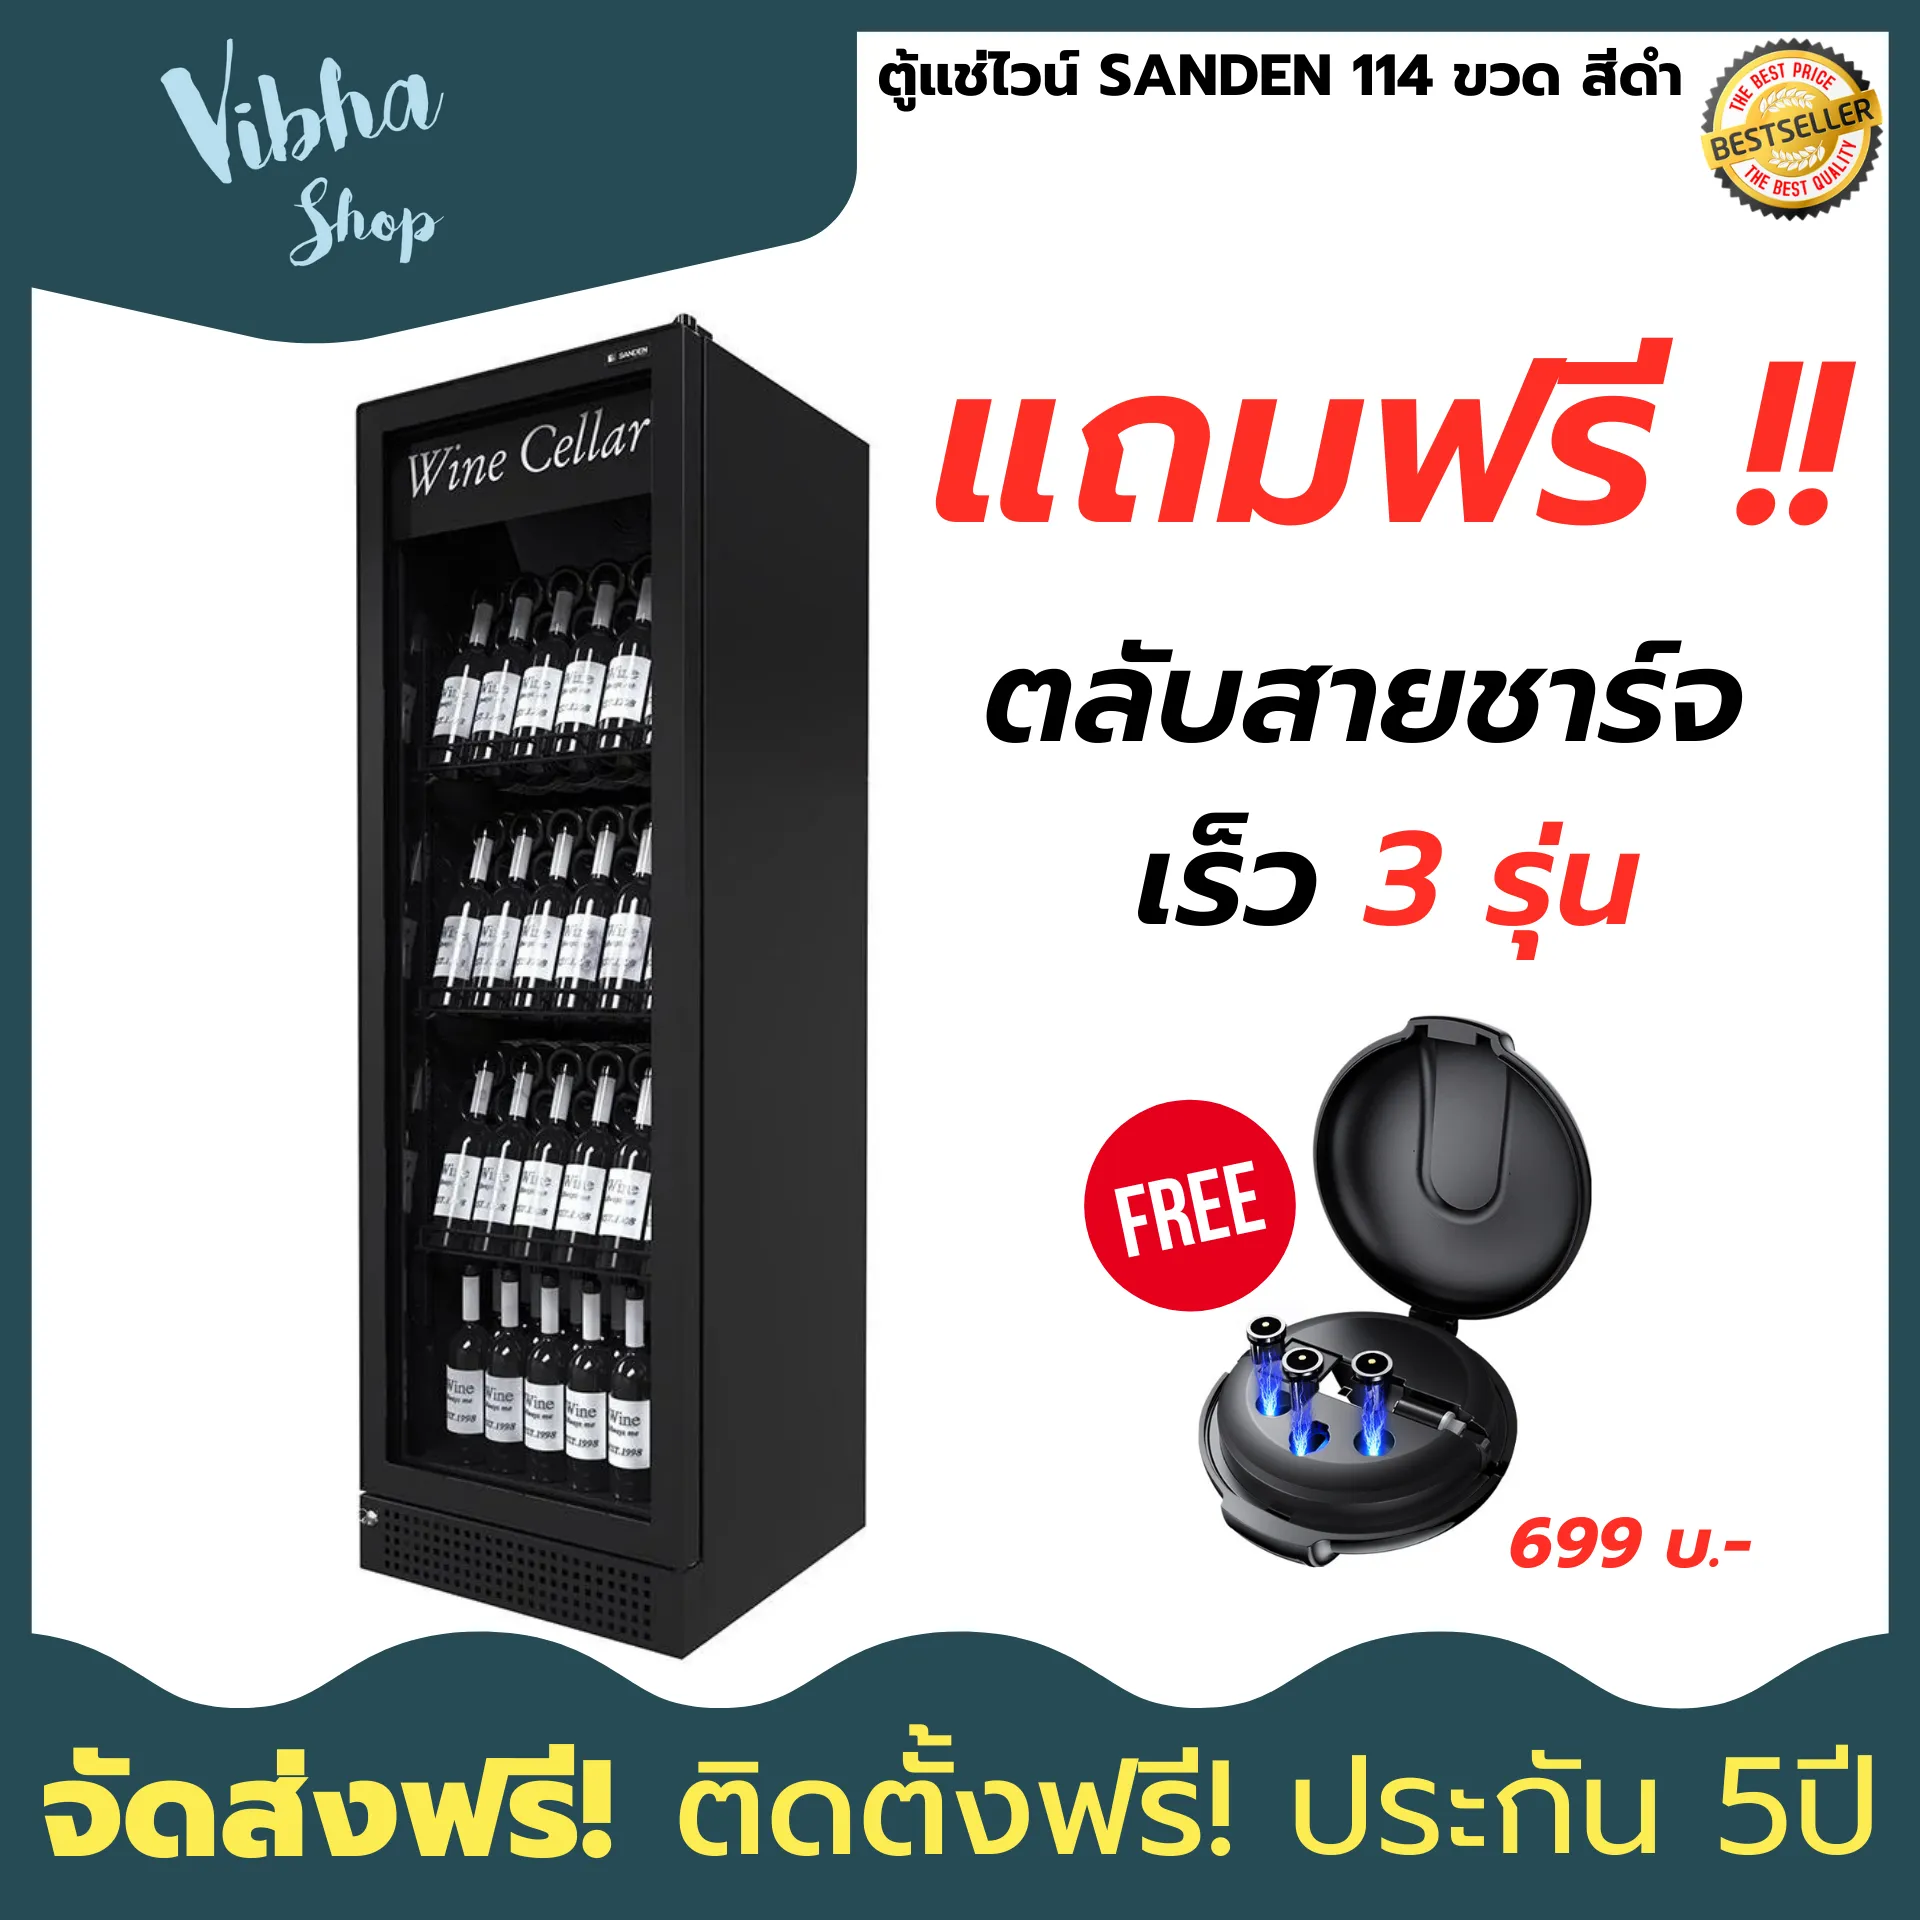 (ส่งฟรี) ตู้แช่ไวน์ SANDEN 114 ขวด สีดำ ตู้แช่เครื่องดื่ม ตู้เย็น ตู้แช่ไวน์ ตู้แช่เย็น ตู้แช่แข็ง ตู้แช่ ของแท้ ประกัน 5ปี Vibha shop